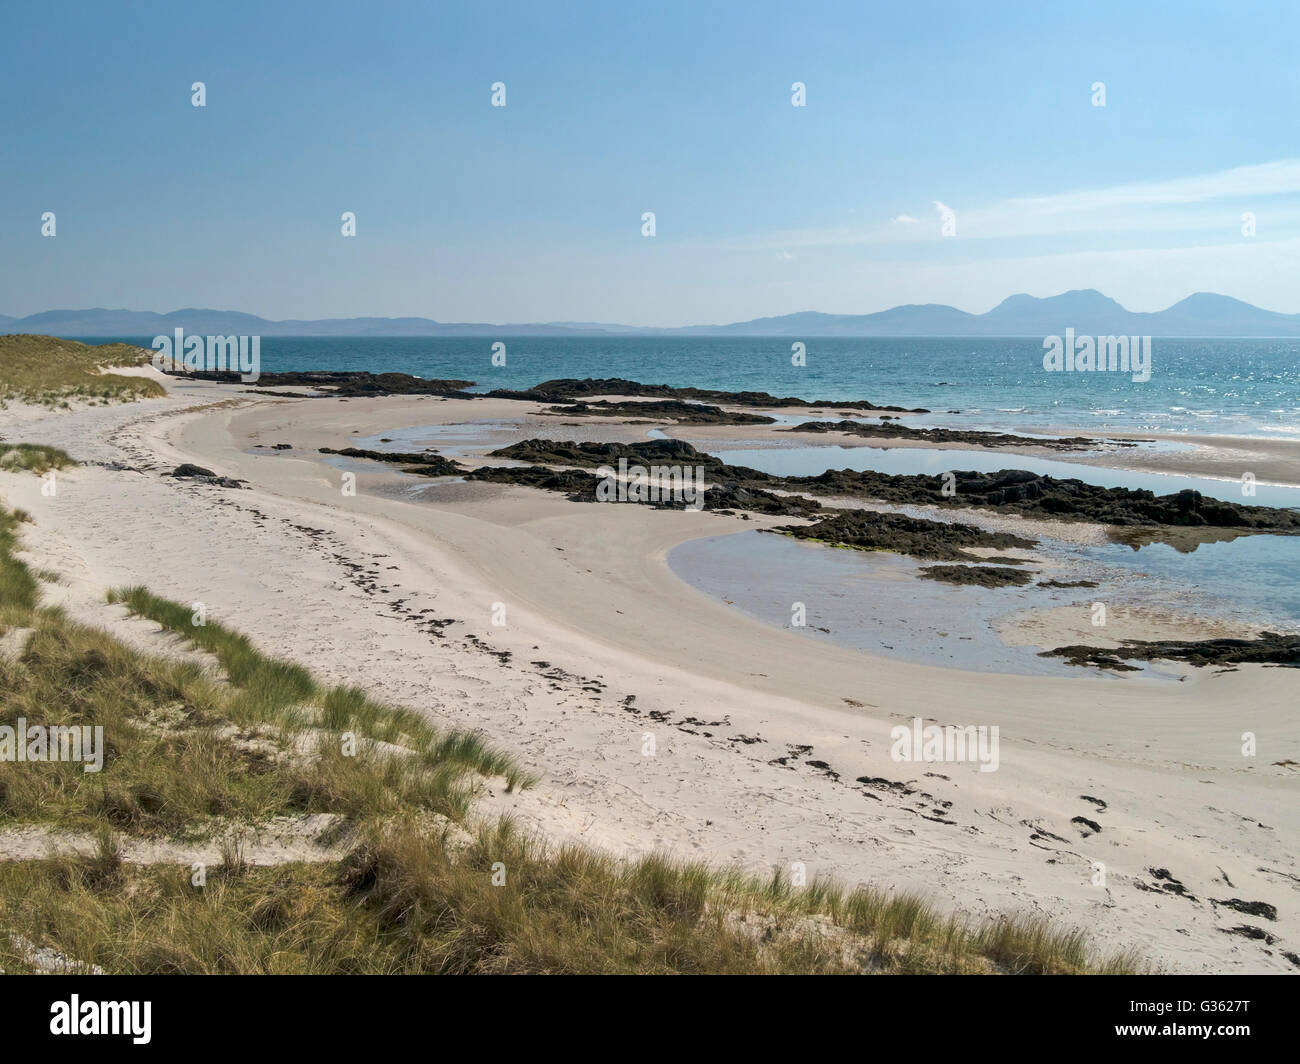 Spiaggia di sabbia bianca in prossimità del filamento con Isle of Jura in distanza, Isola di Colonsay, scozzesi Ebridi, Scotland, Regno Unito. Foto Stock